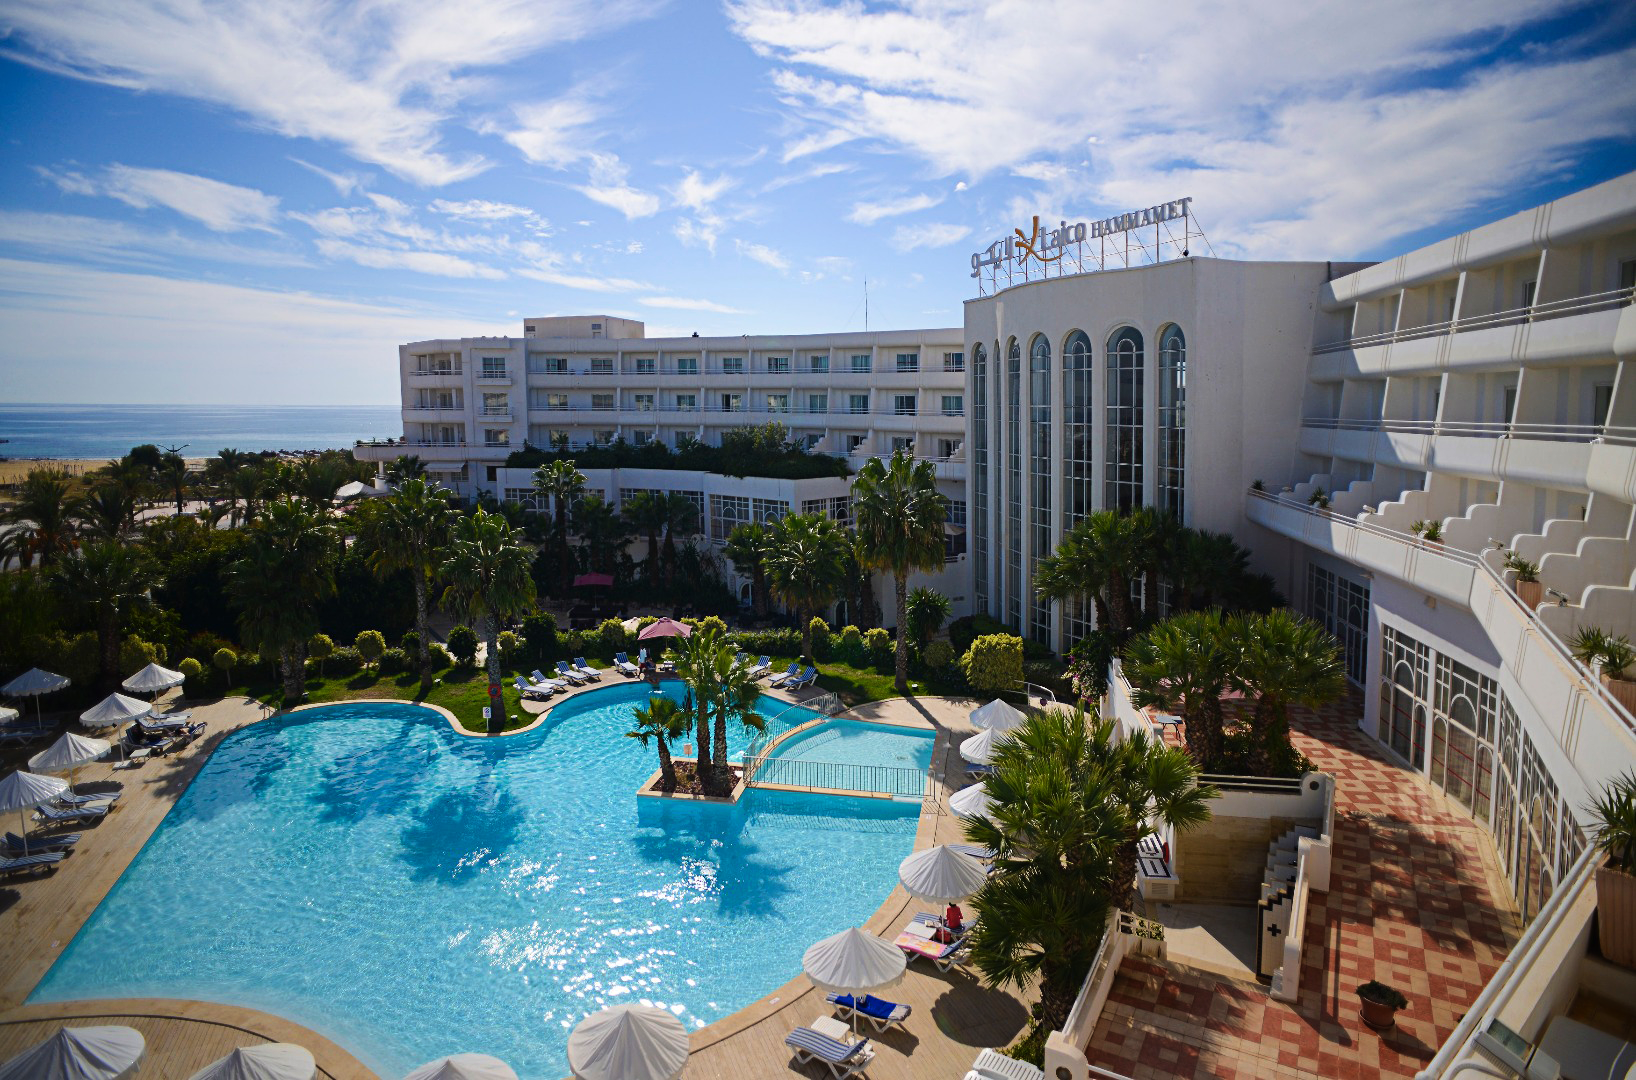 فنادق تونس | فنادق تونس : قائمة بأفضل الفنادق في مدن تونس 2020